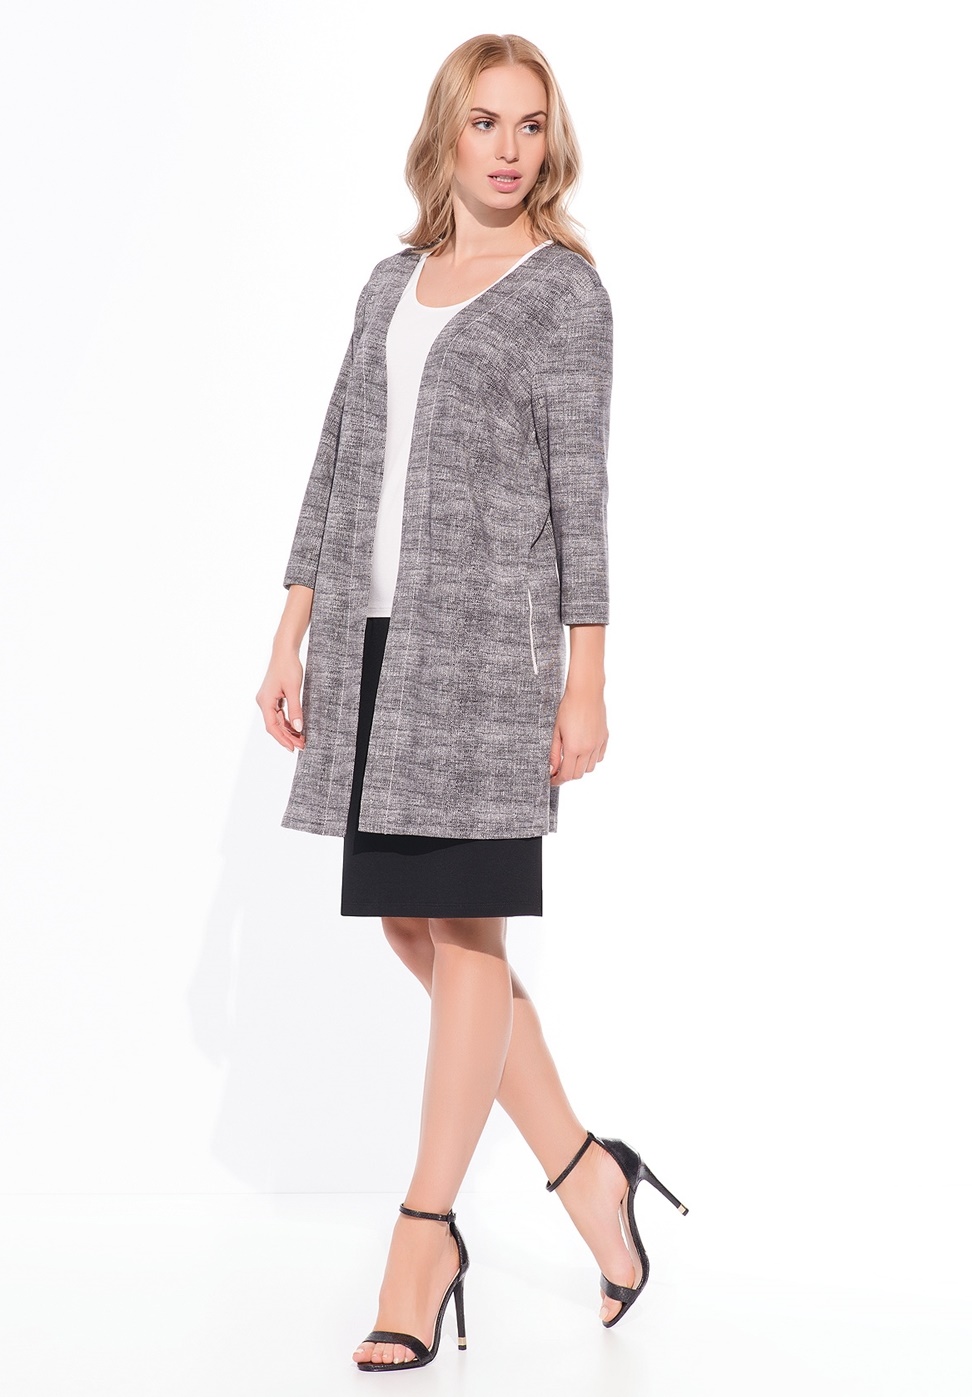 Купить кардиган женский серого цвета Sunwear WZ514 в интернет-магазине ...